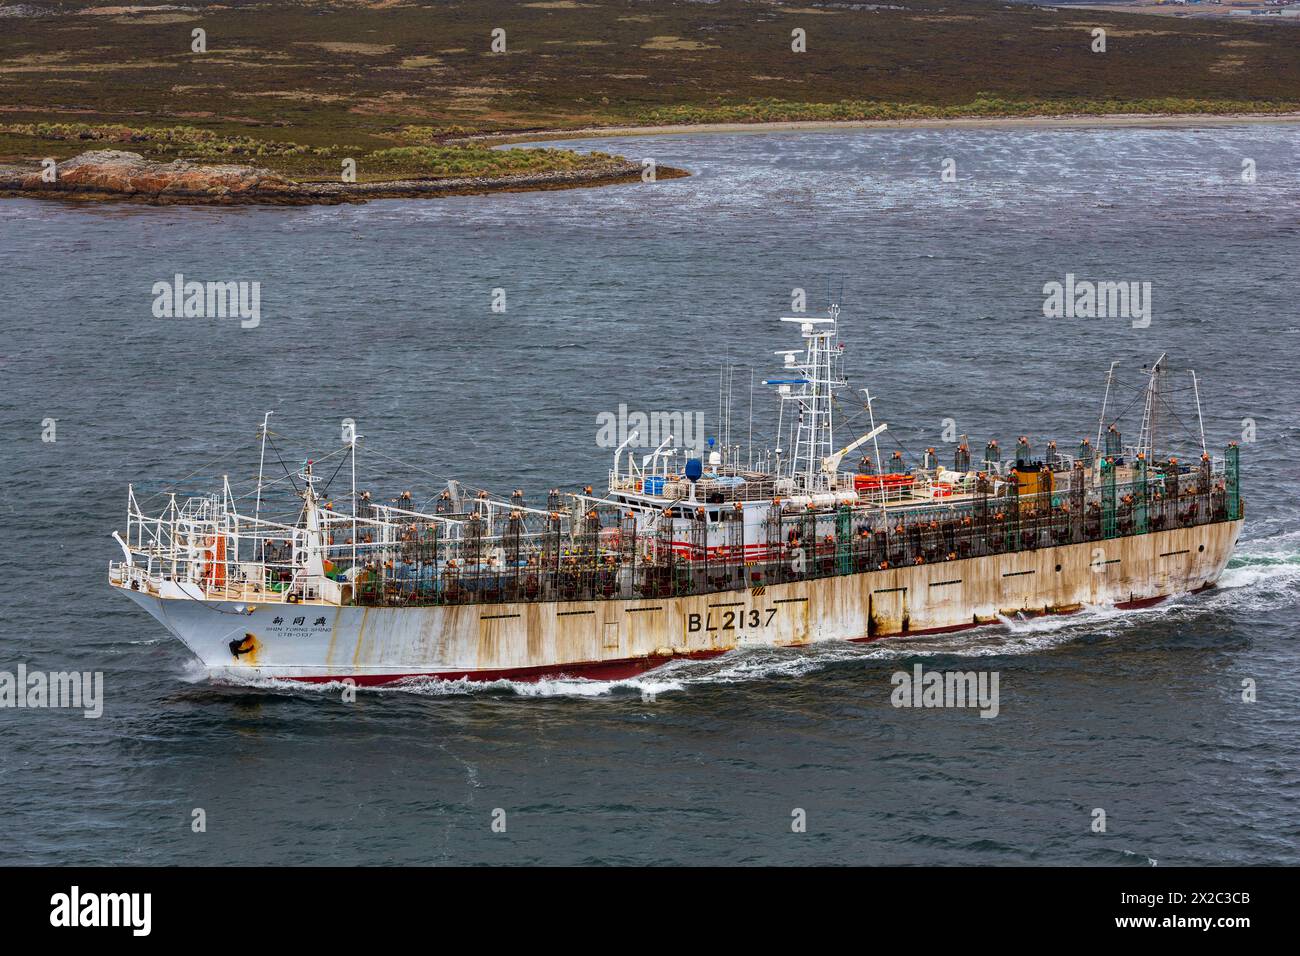 Bateau taïwanais de pêche au calmar, Port Stanley, îles Falkland, Royaume-Uni Banque D'Images